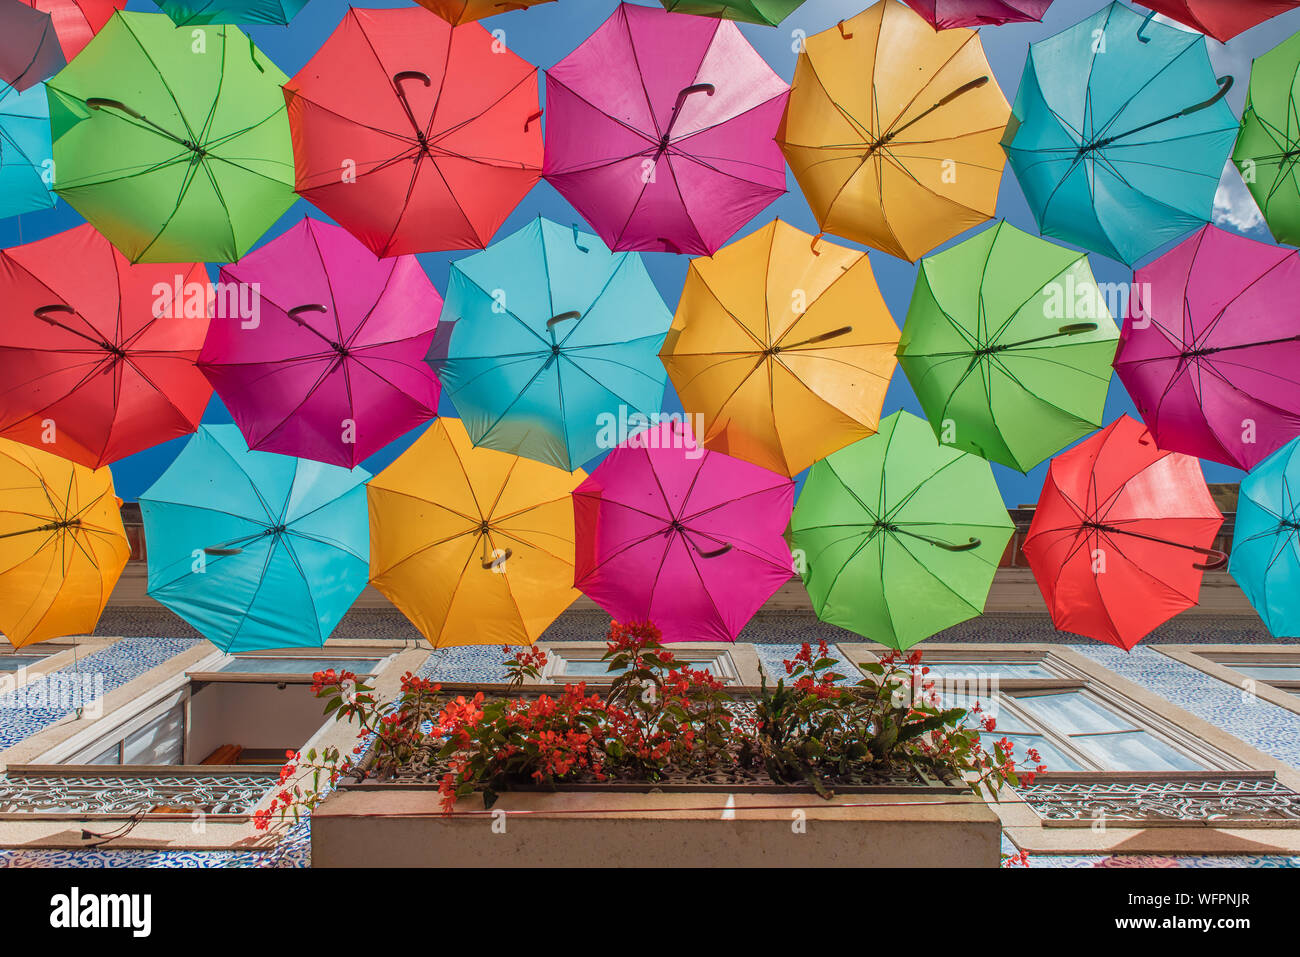 Paraguas de portugal fotografías e imágenes de alta resolución - Alamy